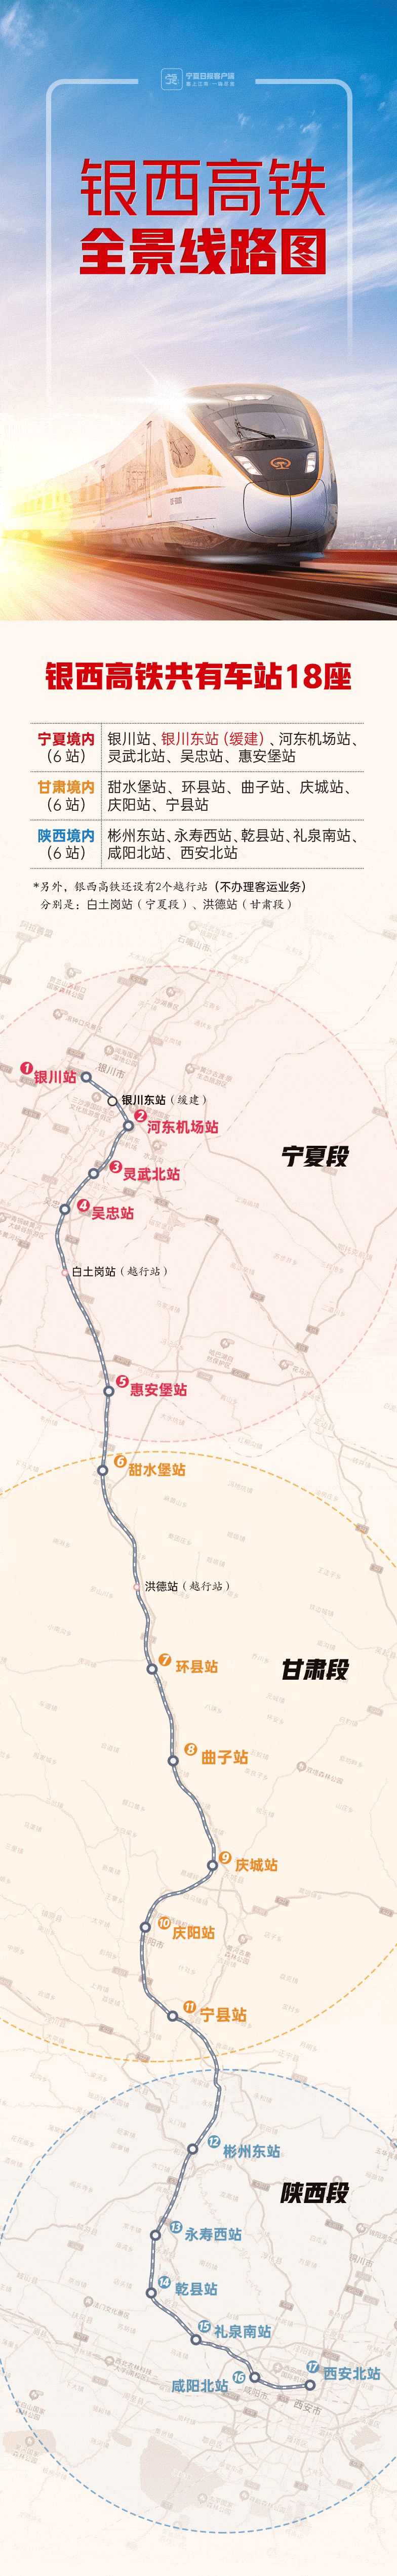 银西高铁票价公布 庆阳站至宁县站26元